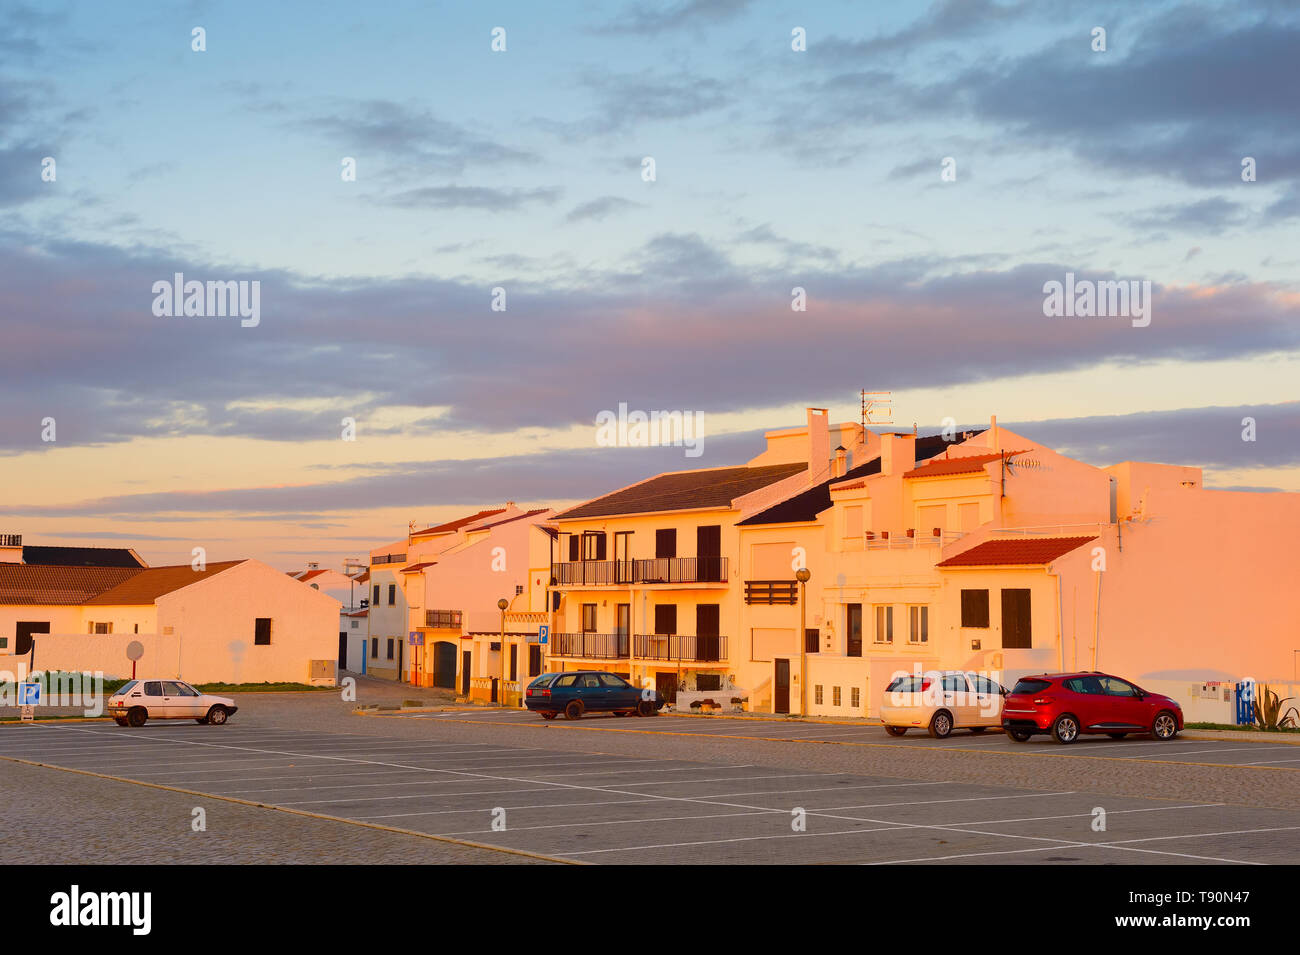 Sunset View der traditionellen Portugal Stadt Architektur und die Autos auf dem Parkplatz. Baleal, Portugal Stockfoto